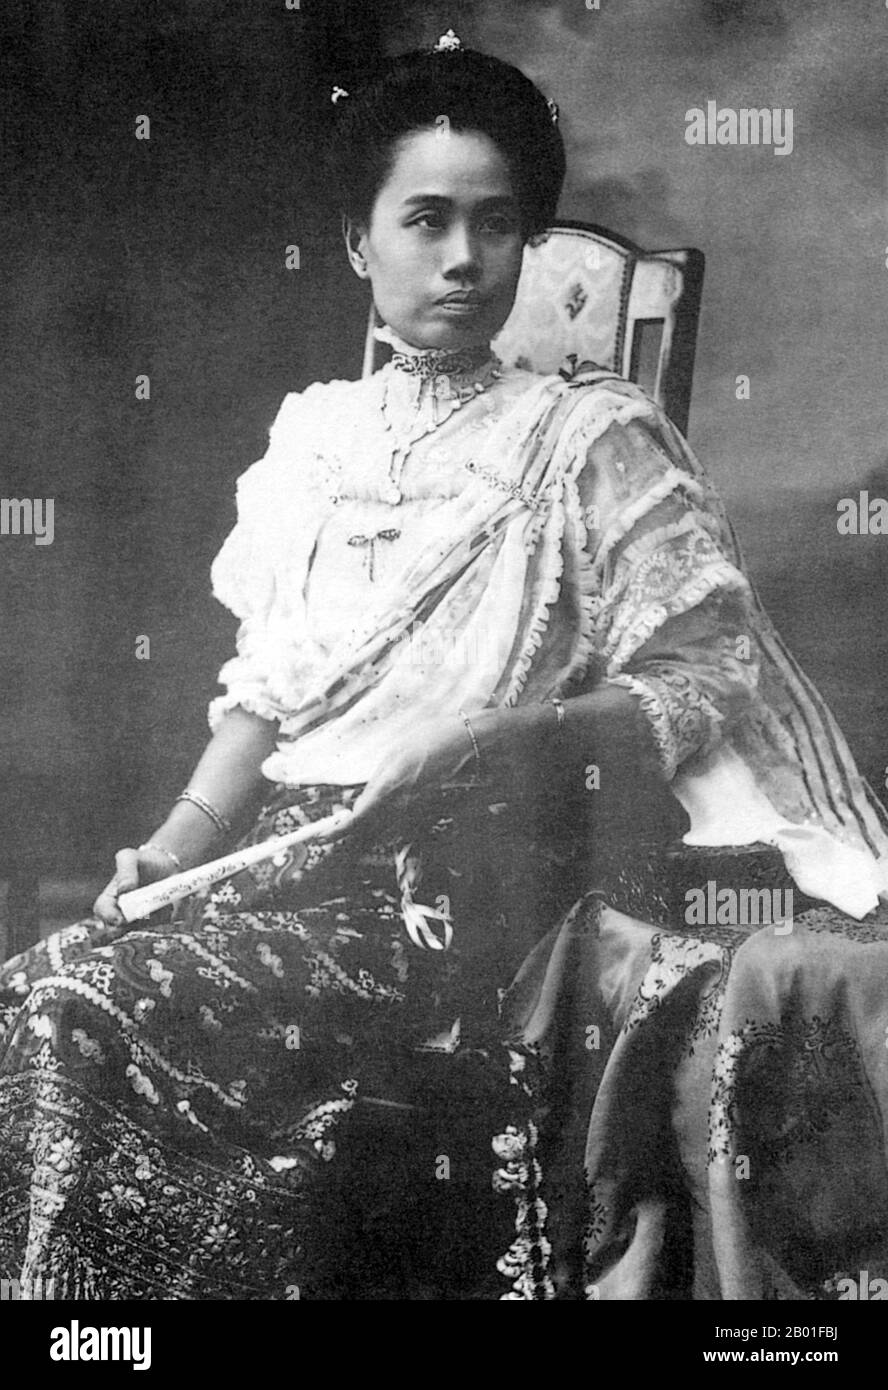 Thailandia: Principessa Consort Dara Rasmi (26 agosto 1873 - 9 dicembre 1933), fotografia formale, fine 19th ° secolo. La principessa Dara Rasmi era la principessa di Chiang mai e Siam (in seguito Thailandia) e la figlia del re Inthawichayanon e della regina Thipkraisorn Rajadewi di Chang mai, una scion della dinastia Chao Chet Ton. Fu una delle principesse consorte di Chulalongkorn, re Rama V di Siam, e diede alla luce una figlia del re Chulalongkorn, principessa Vimolnaka Nabisi. Nel 1886 lasciò Chiang mai per entrare nel Grand Palace di Bangkok. Foto Stock